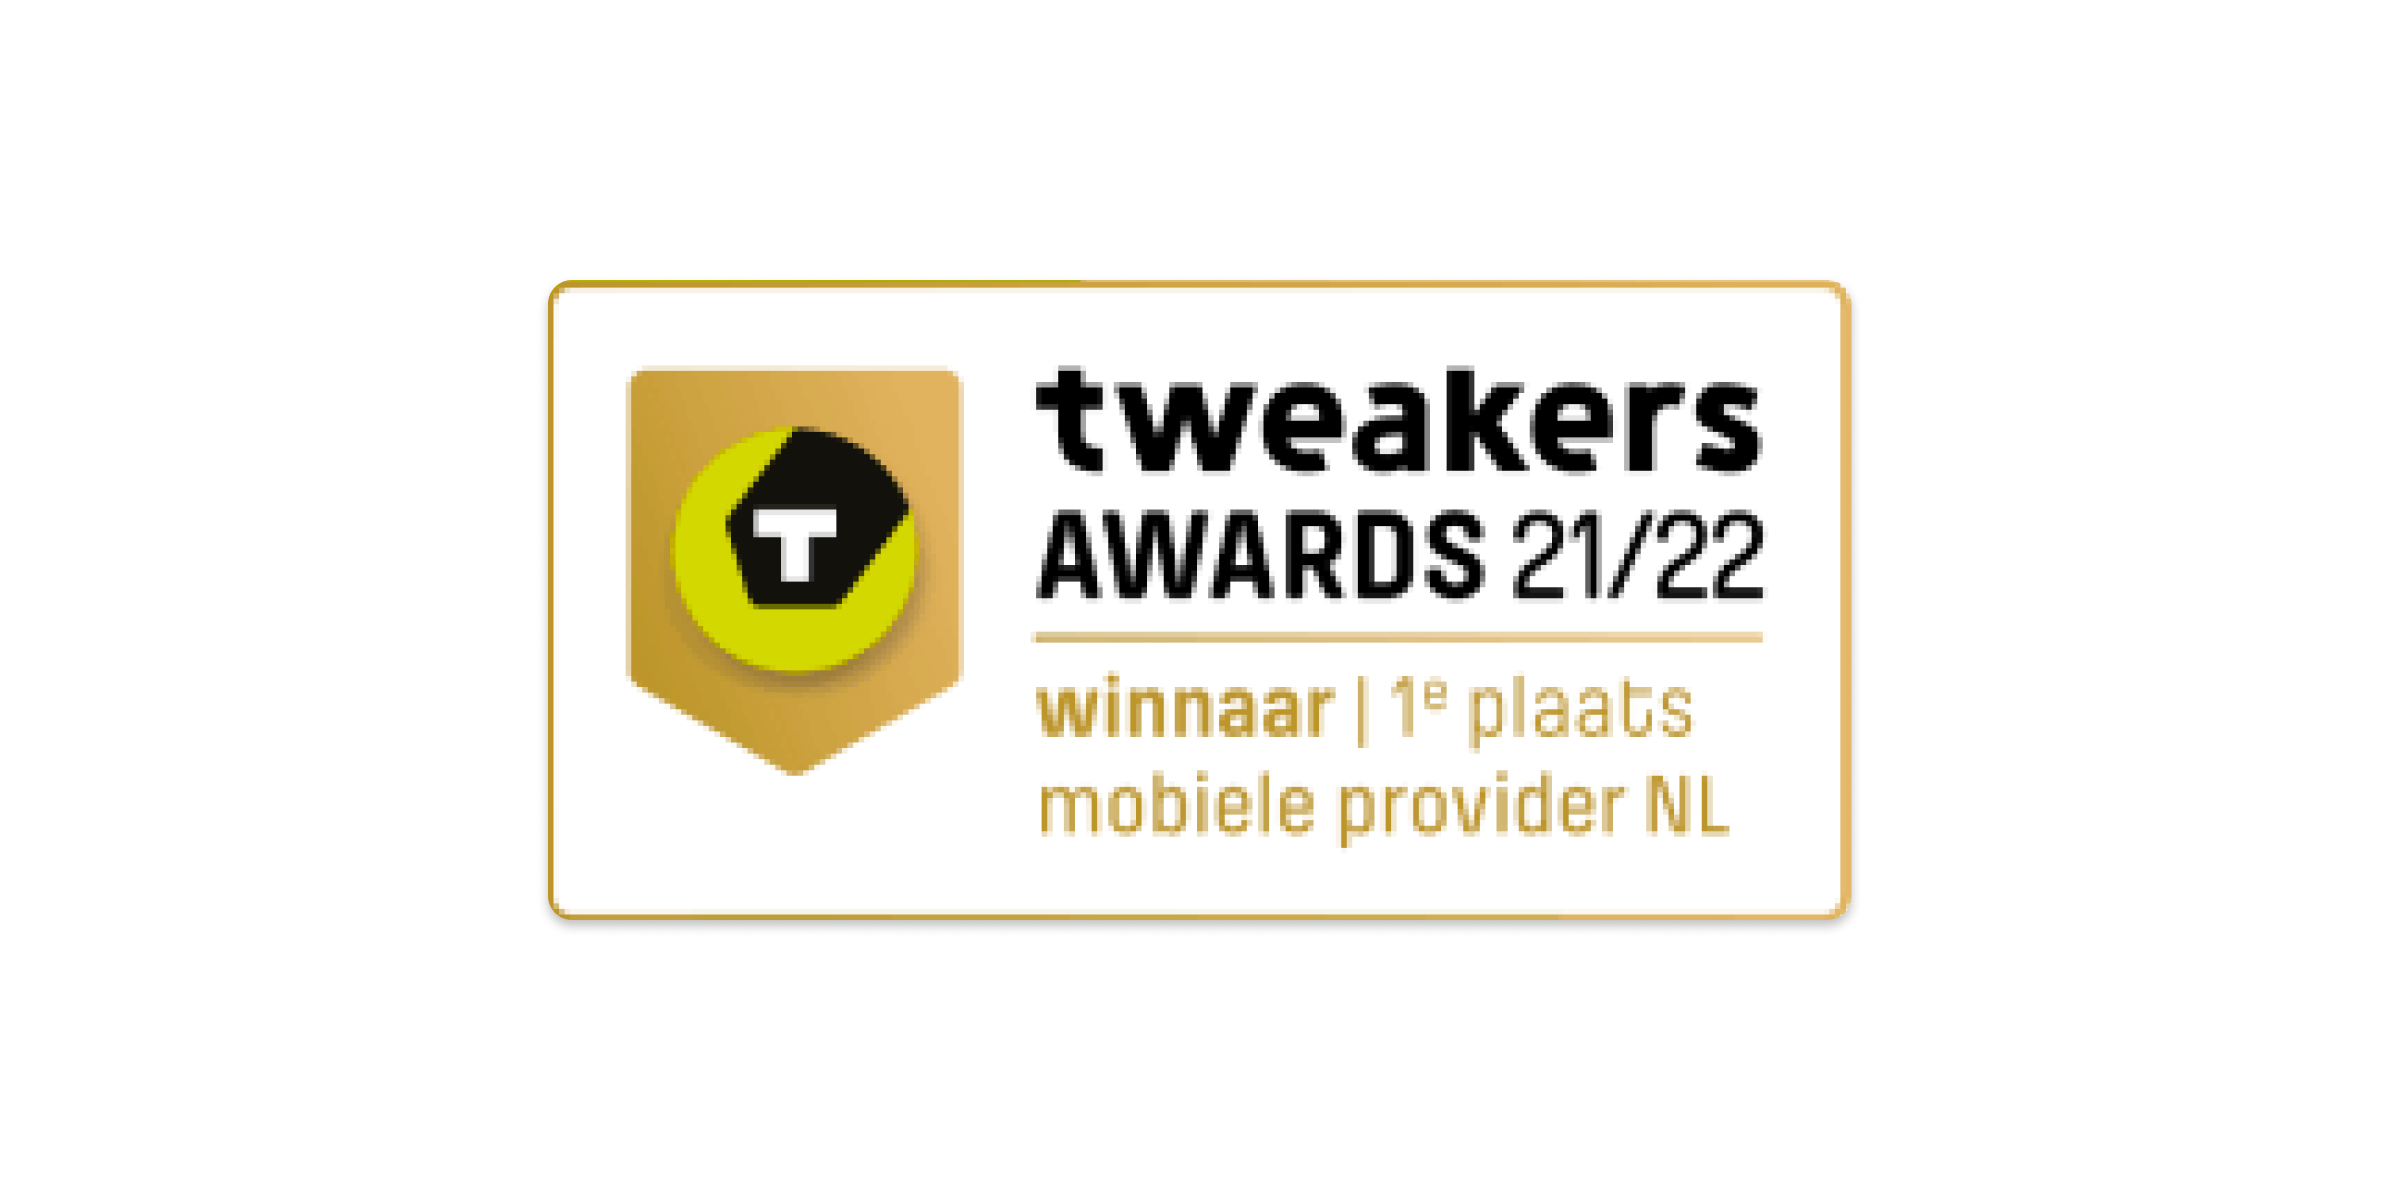 Tweakers awards 21/22: winnaar 1e plaats mobiele provider NL